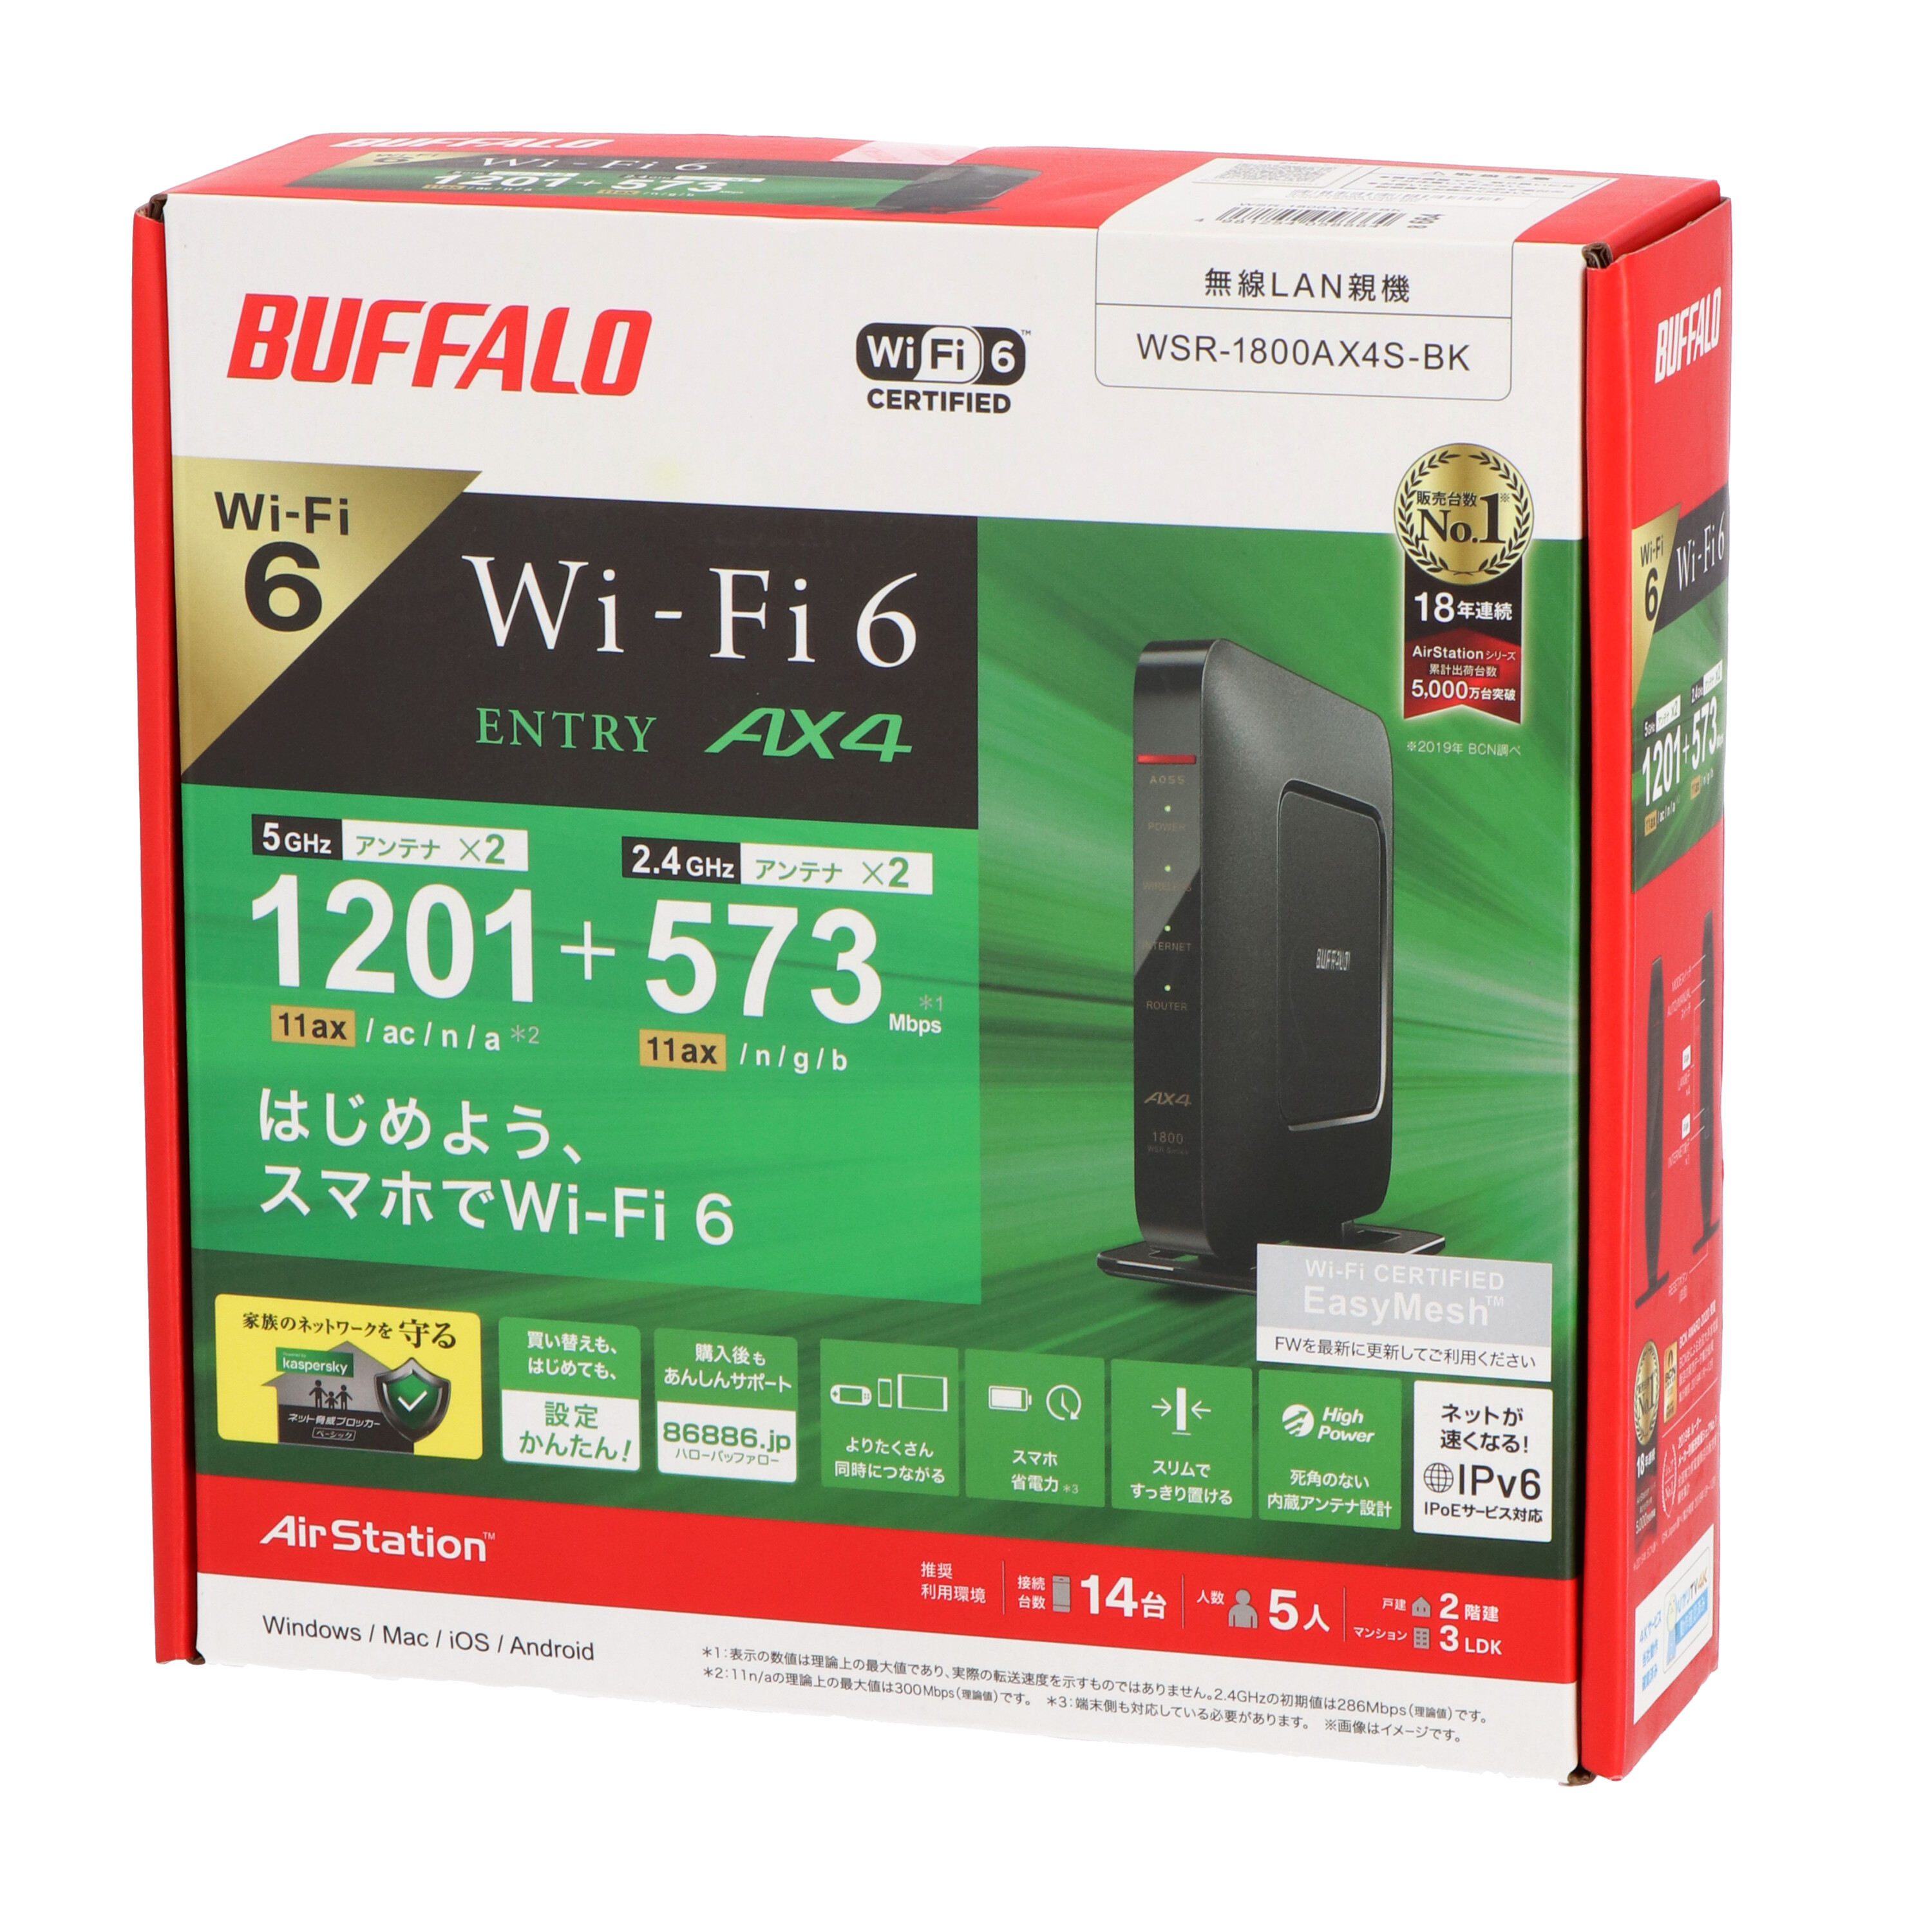 超人気 バッファロー BUFFALO WSR-1800AX4S-BK ブラック Wi-Fi 6対応ルーター エントリーモデル